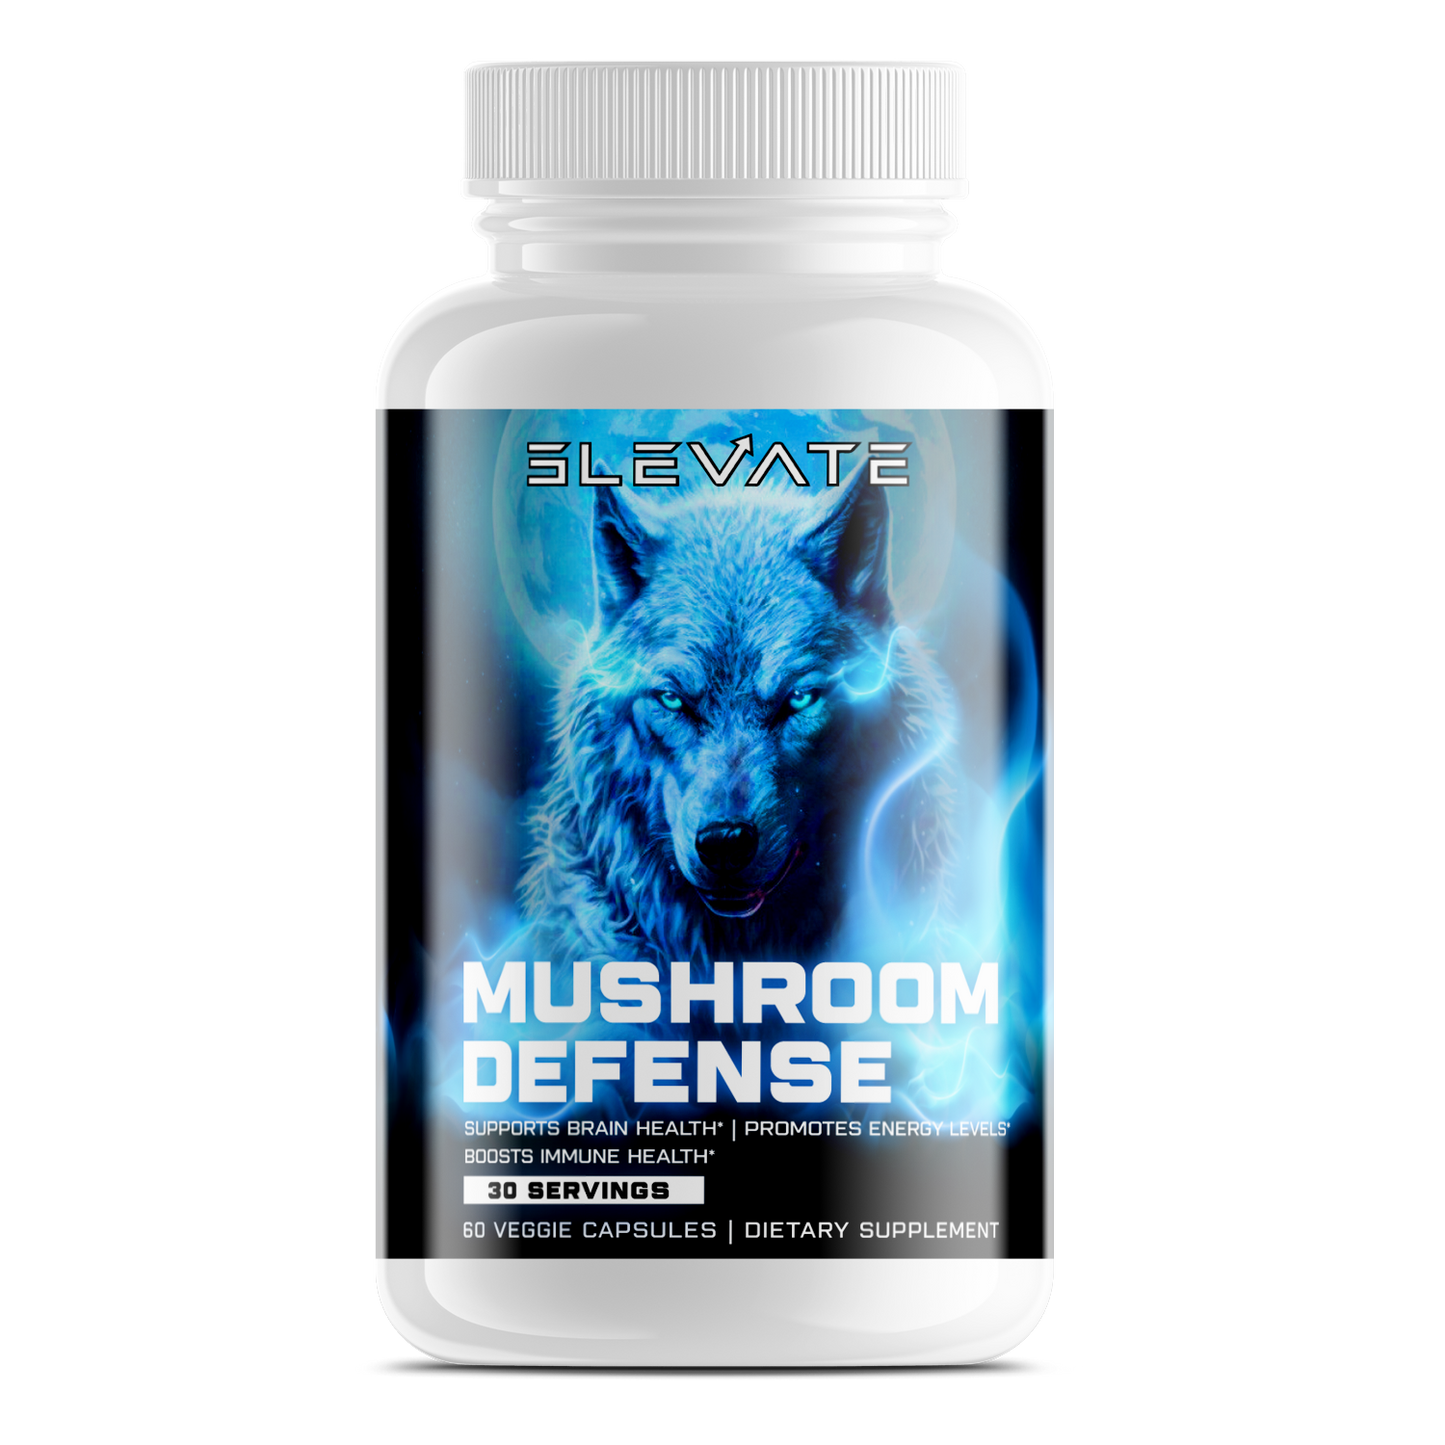 Mushroom Defense